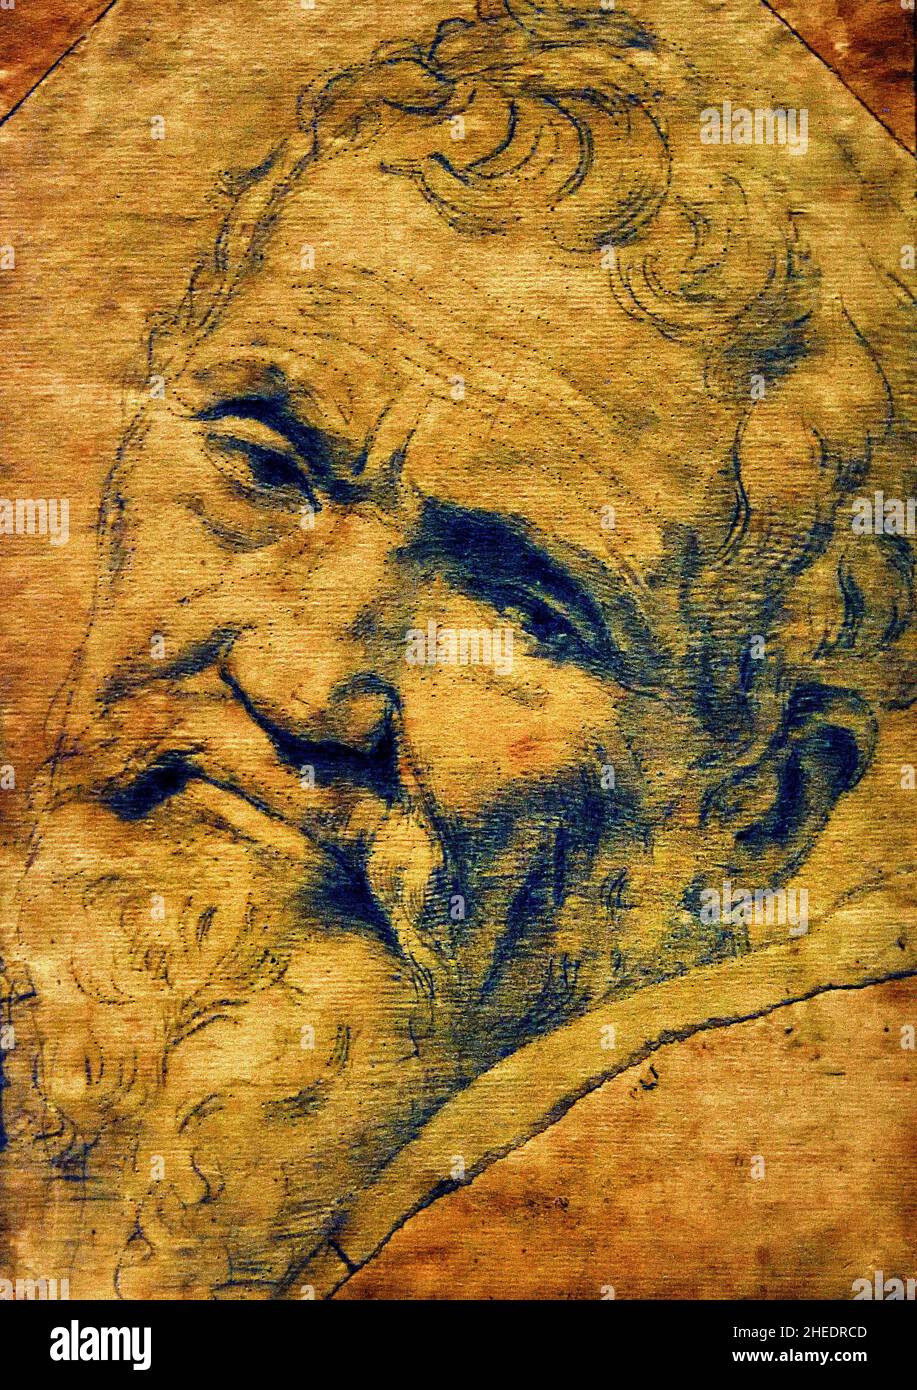 Daniele da Volterra (1509-1566) Roma ca 1550-1553 von Michelangelo ( Michelangelo di Lodovico Buonarroti Simoni ) 1475 –1564 Florentiner Bildhauer, Maler, Architekt und Dichter der Hochrenaissance . Florenz Italien Italienisch Stockfoto